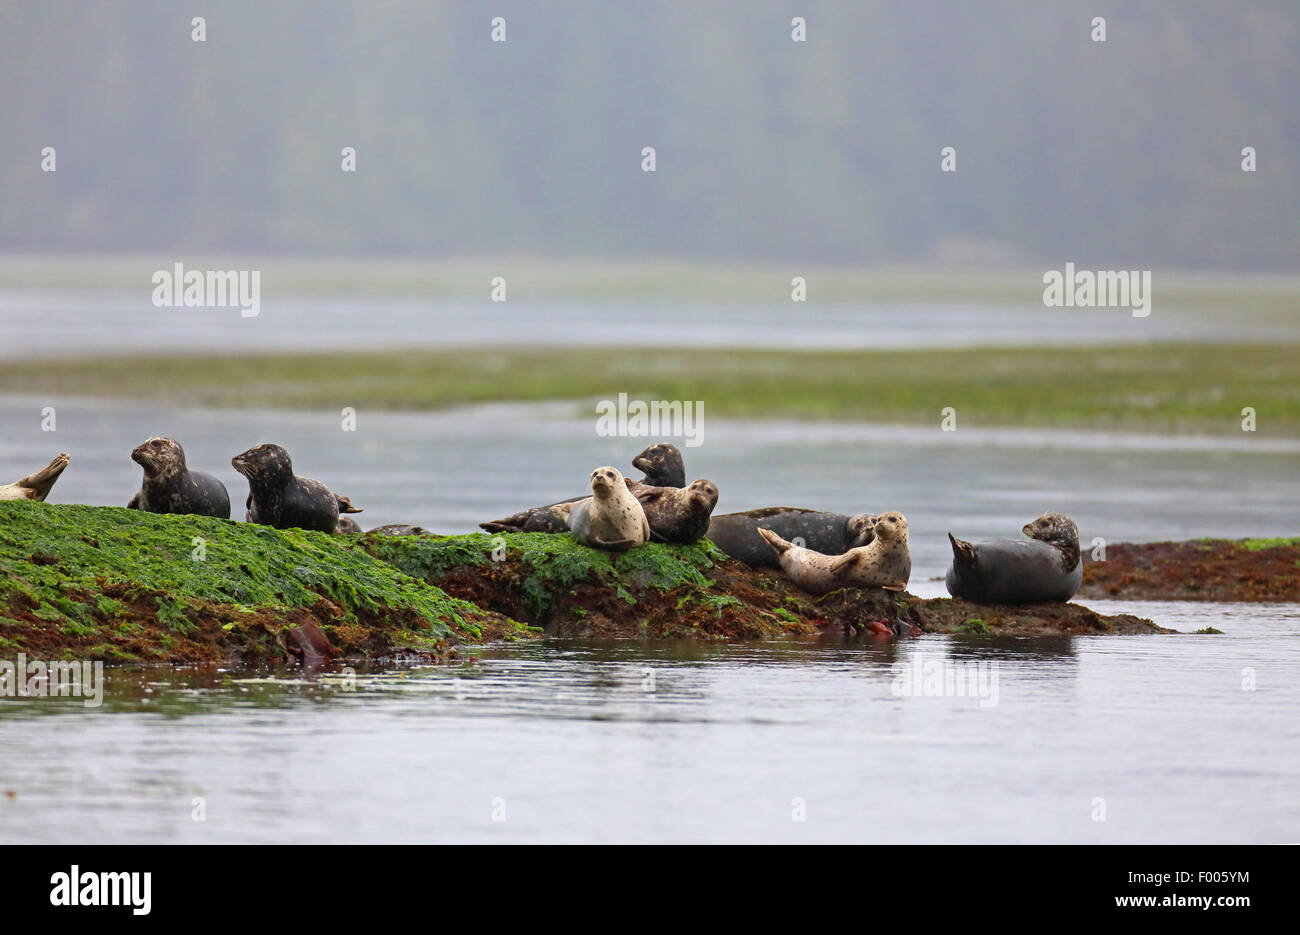 Le phoque, phoque commun (Phoca vitulina), groupe se situe sur une île rocheuse dans la mer, l'île de Vancouver, Canada Banque D'Images